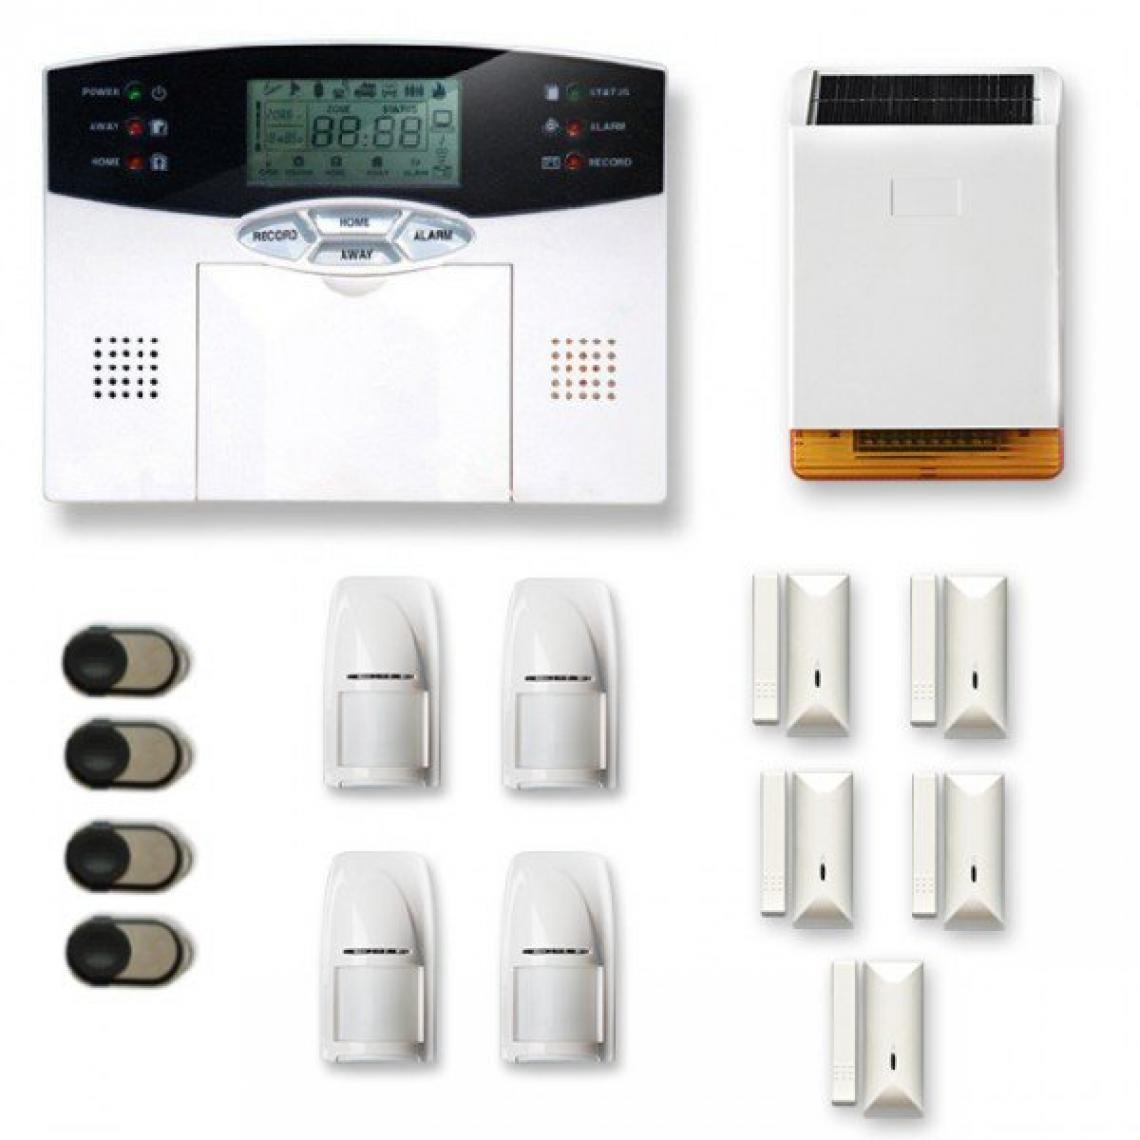 Tike Securite - Alarme maison sans fil MN25 Compatible Box internet - Alarme connectée